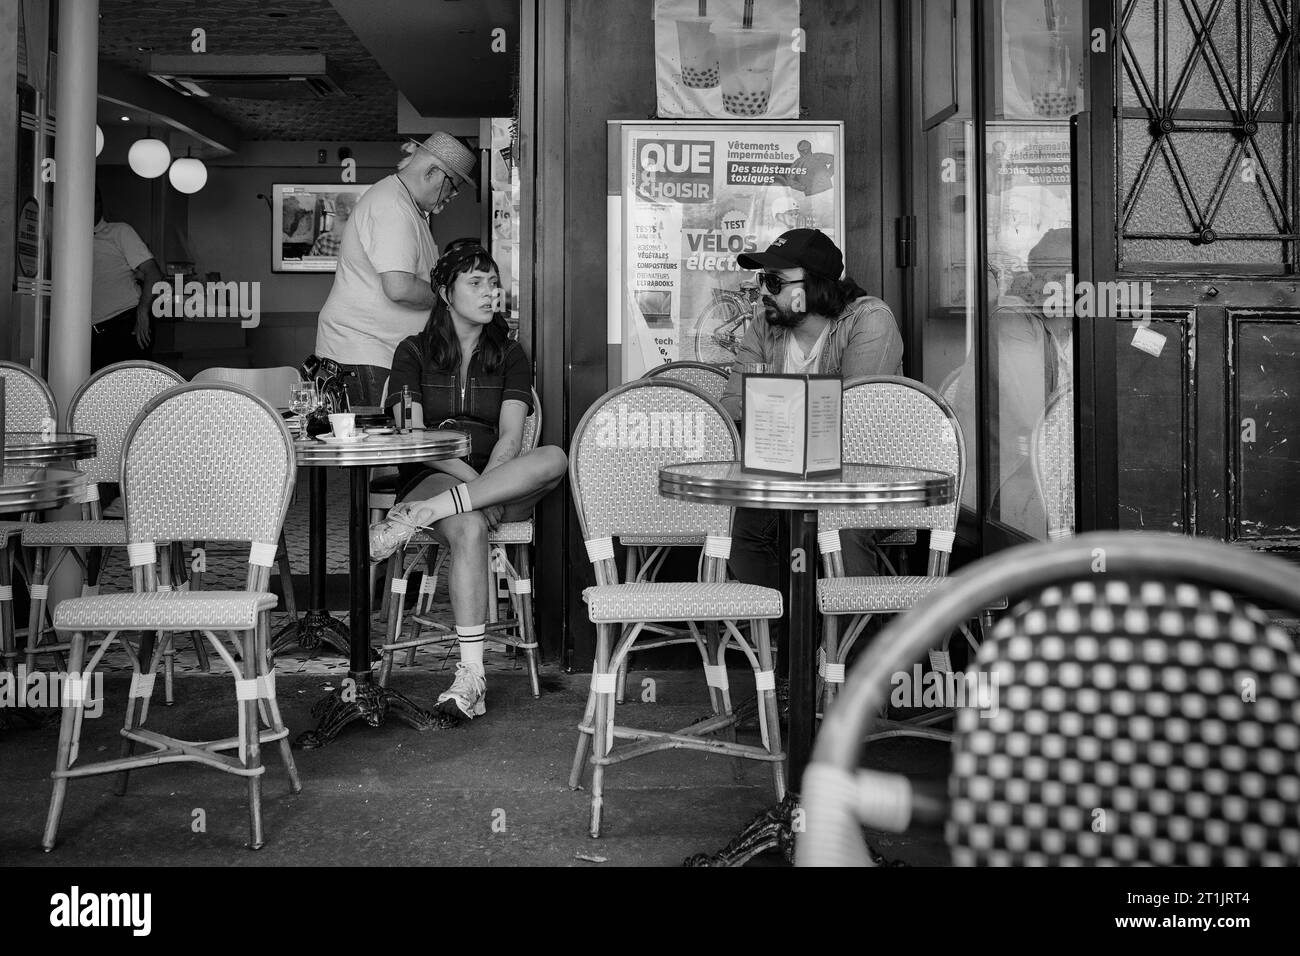 Patrons at a cafe near the Marches des Enfants Rouges, Le Marais,, Paris, France Stock Photo